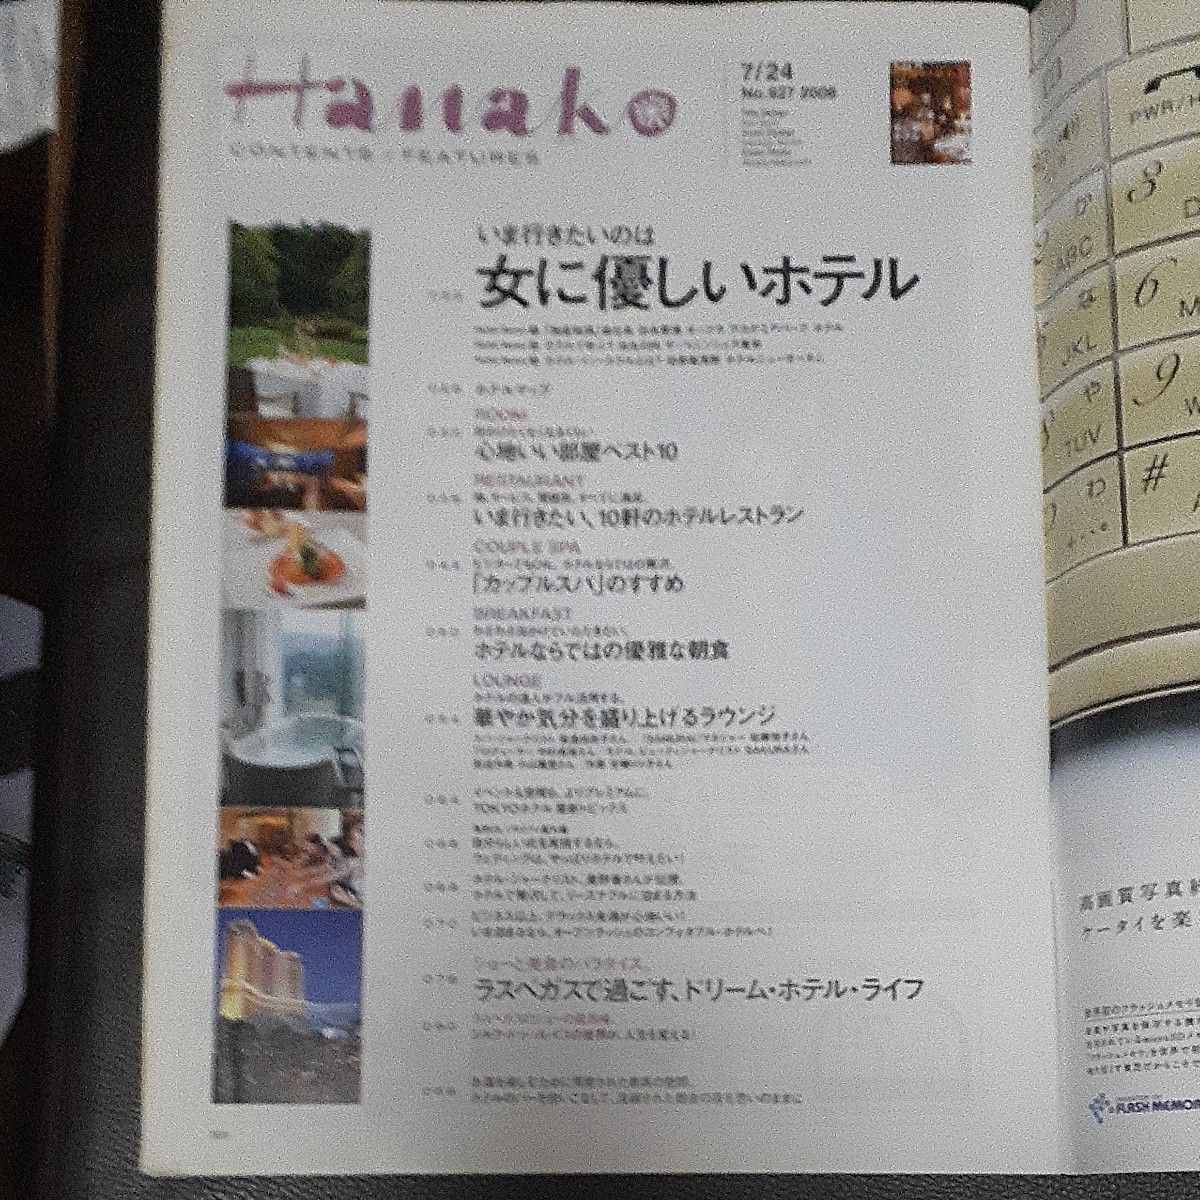 Hanako   2008/4  女に優しいホテル